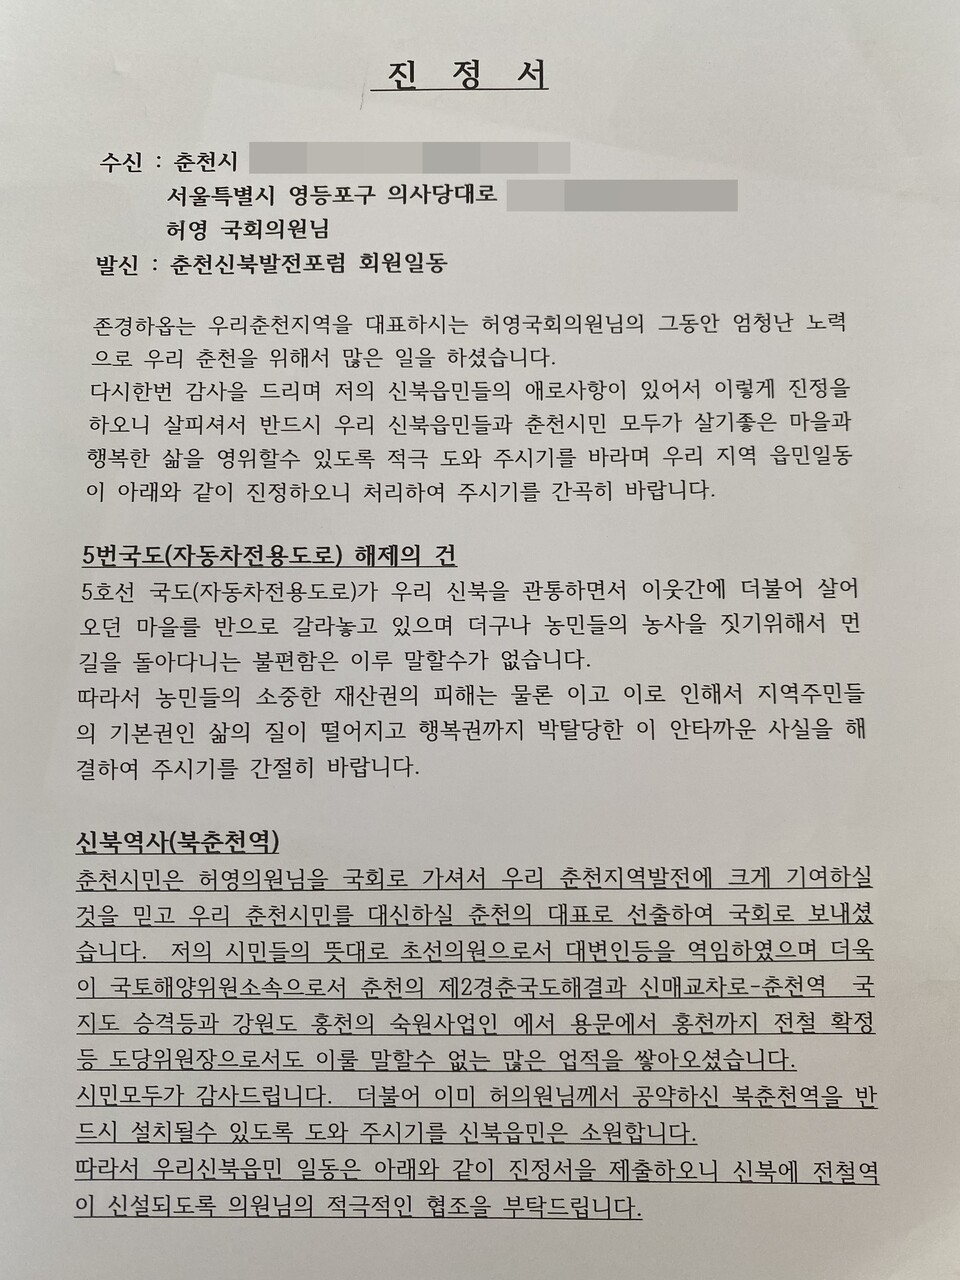 춘천신북발전포럼이 작성한 진정서.